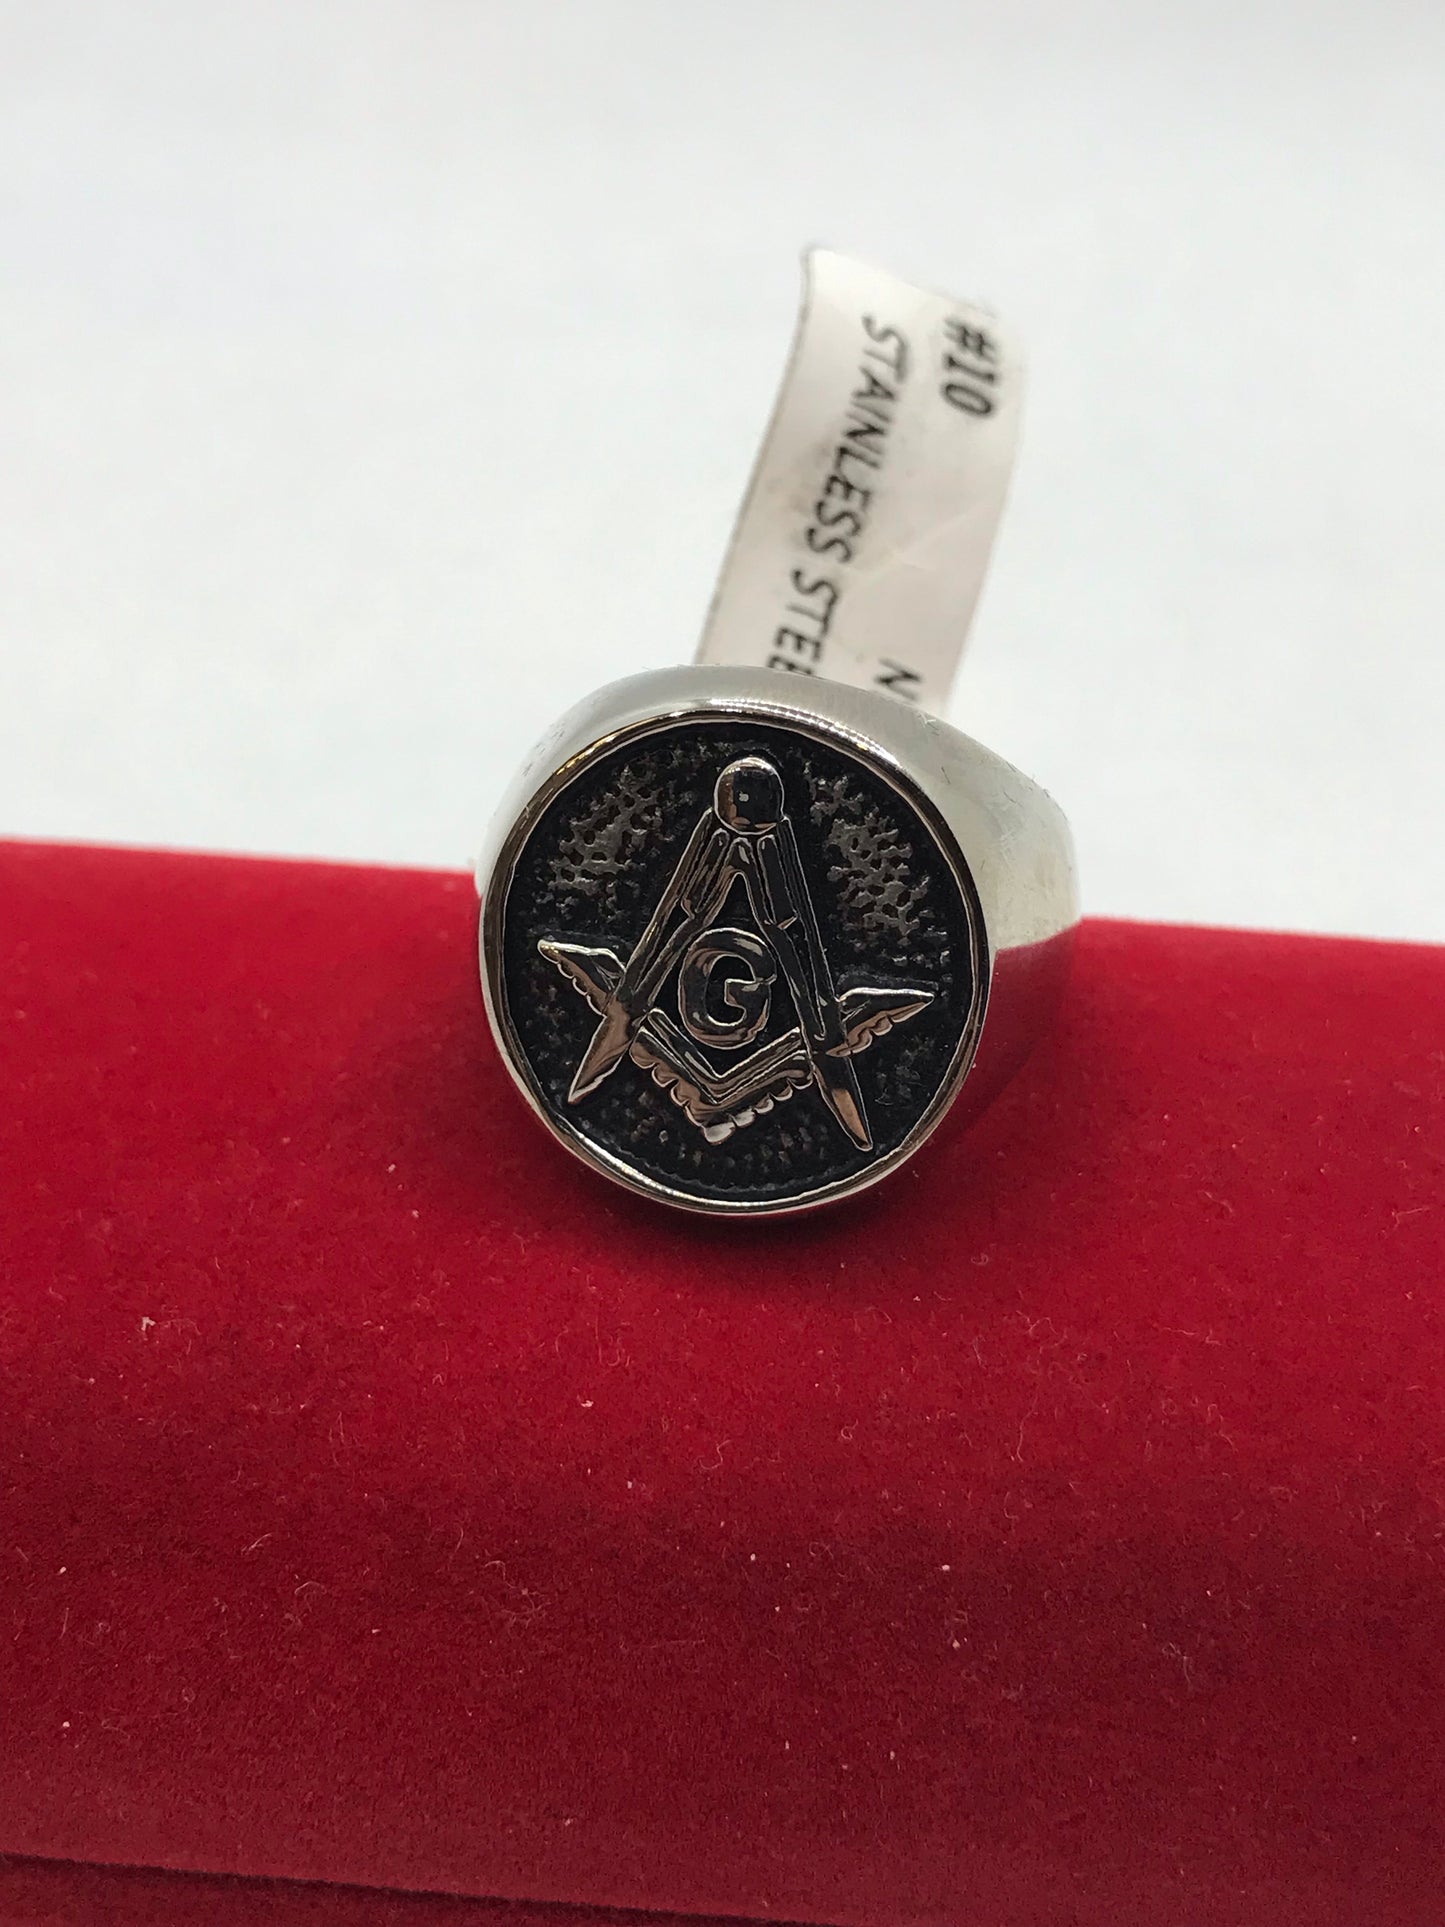 Stainless steel round Masonic ring